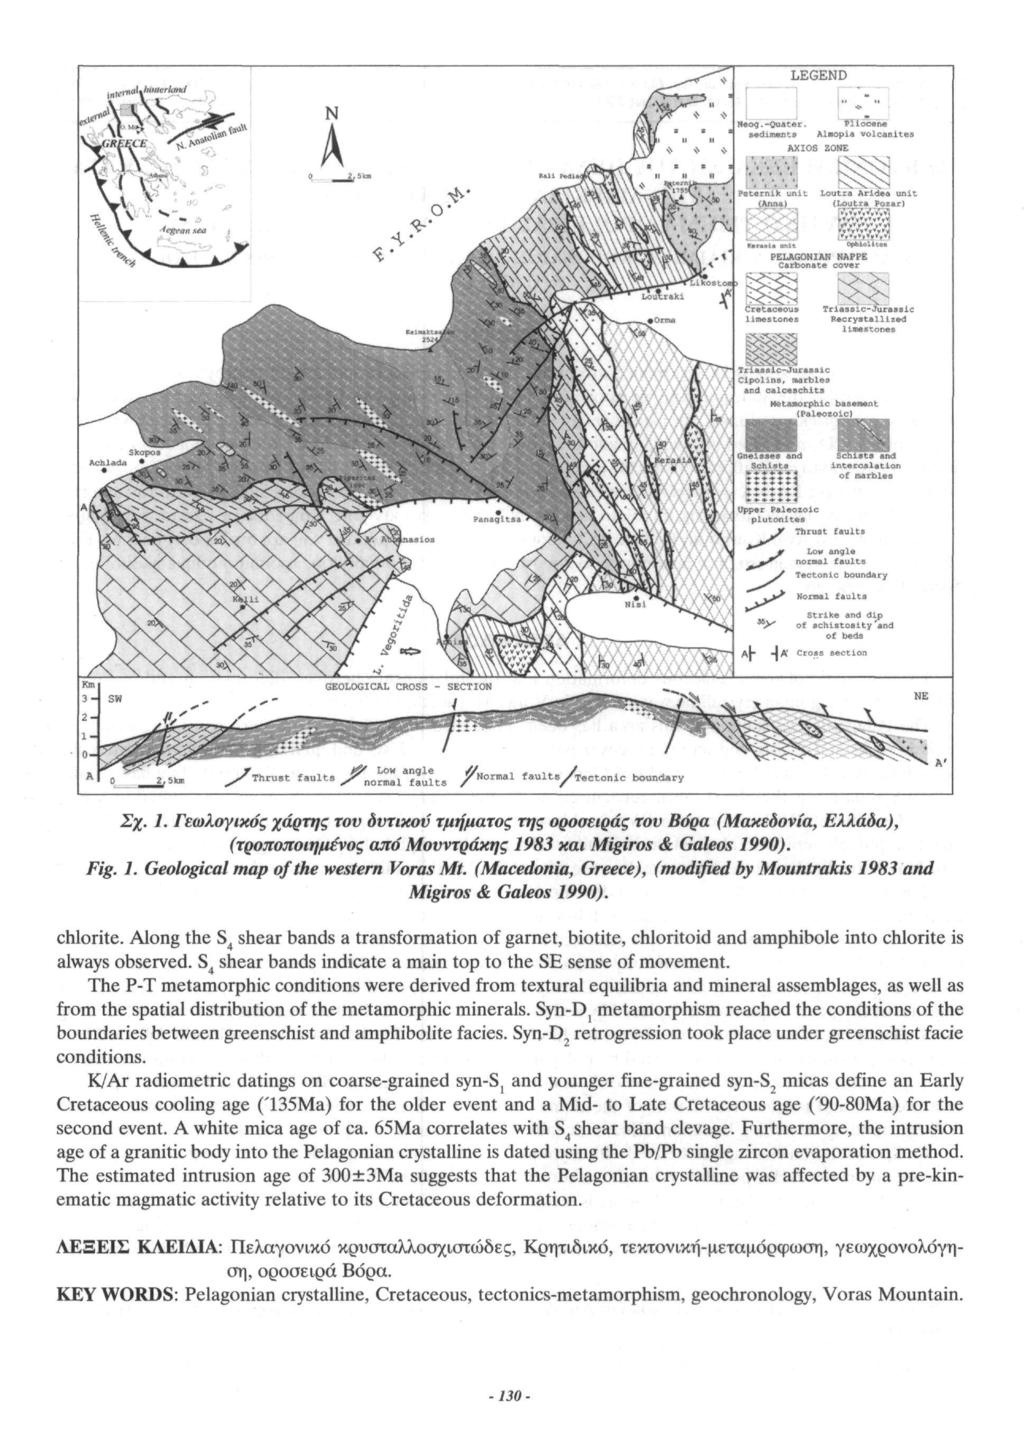 Σχ. 1. Γεωλογικός χάρτης τον δντικον τμήματος της οροσειράς τον Βάρα (Μακεδονία, Ελλάδα), (τροποποιημένος από Μονντράκης 1983 και Migiros & Galeos 1990). Fig. 1. Geological map of the western Voras Mt.